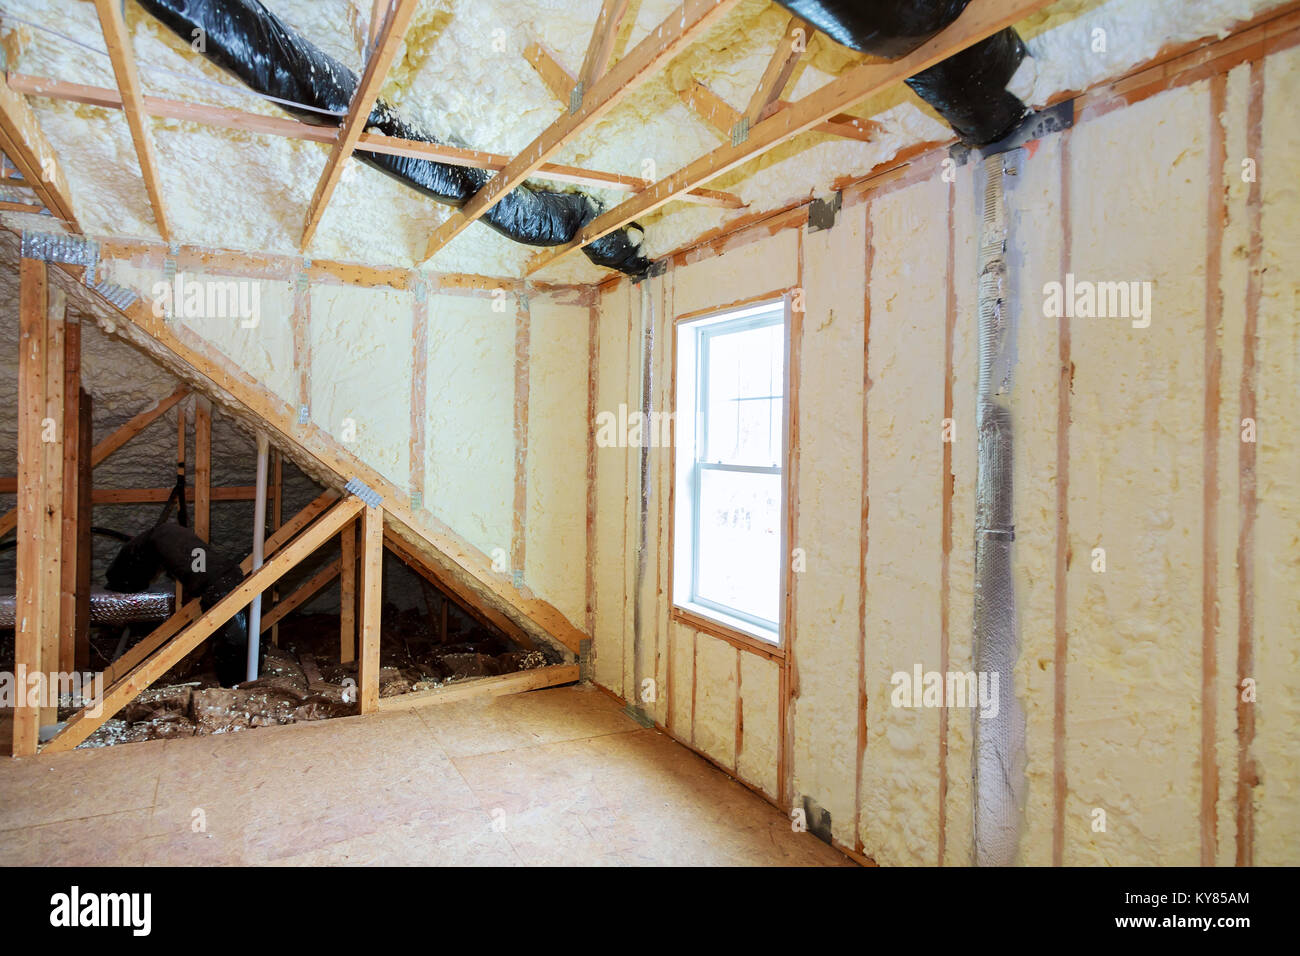 Wohnung attick Dachboden Isolierung teilweise isolierte Wand Wärme  isolierung in einem neuen Haus Stockfotografie - Alamy